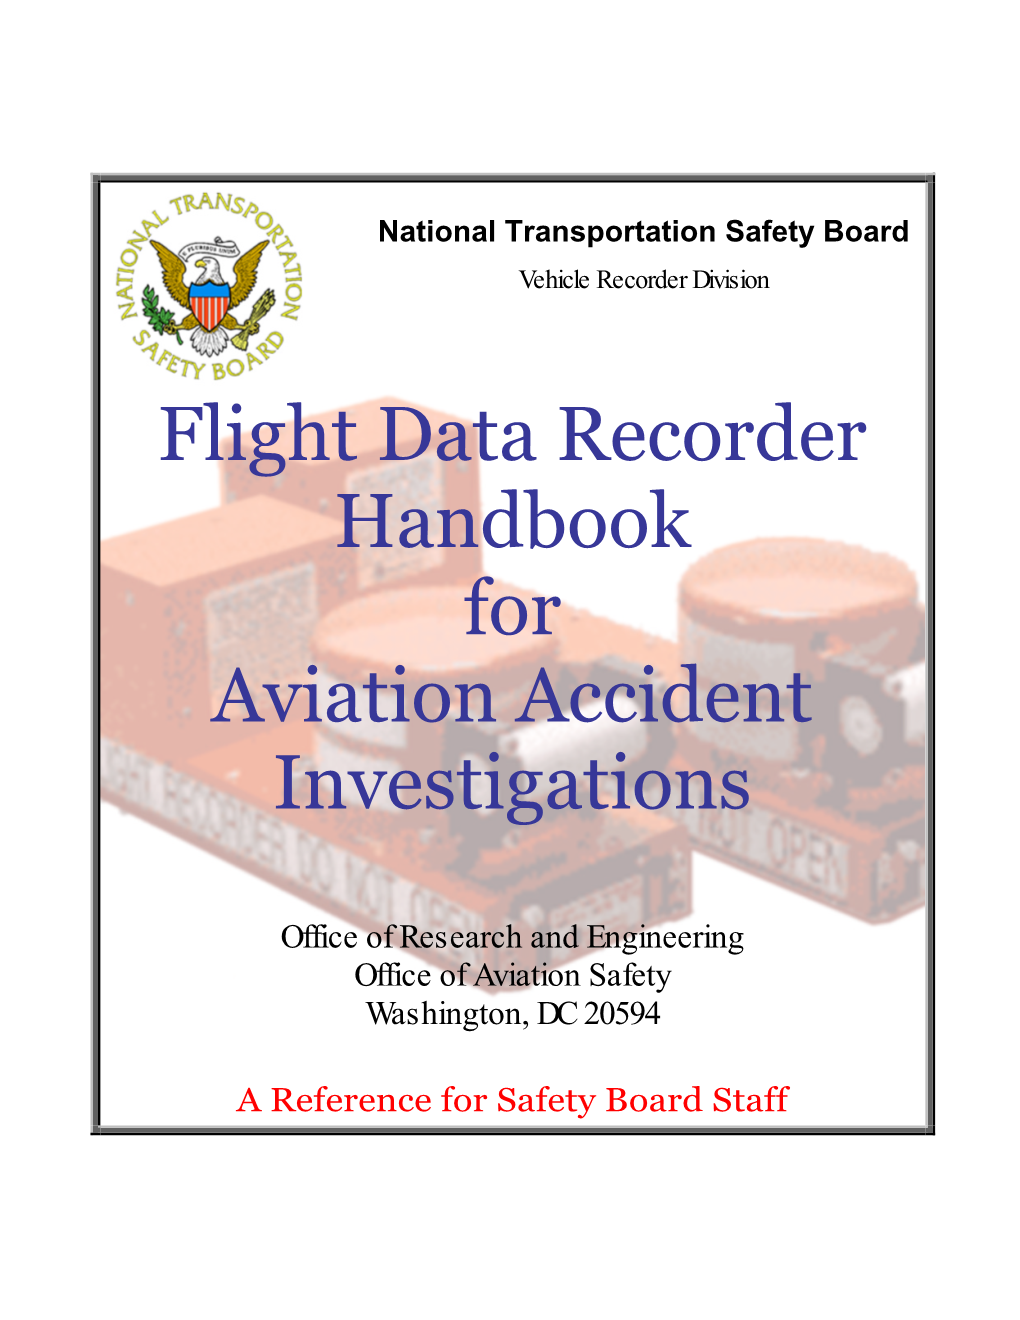 Flight Data Recorder Handbook for Aviation Accident Investigations